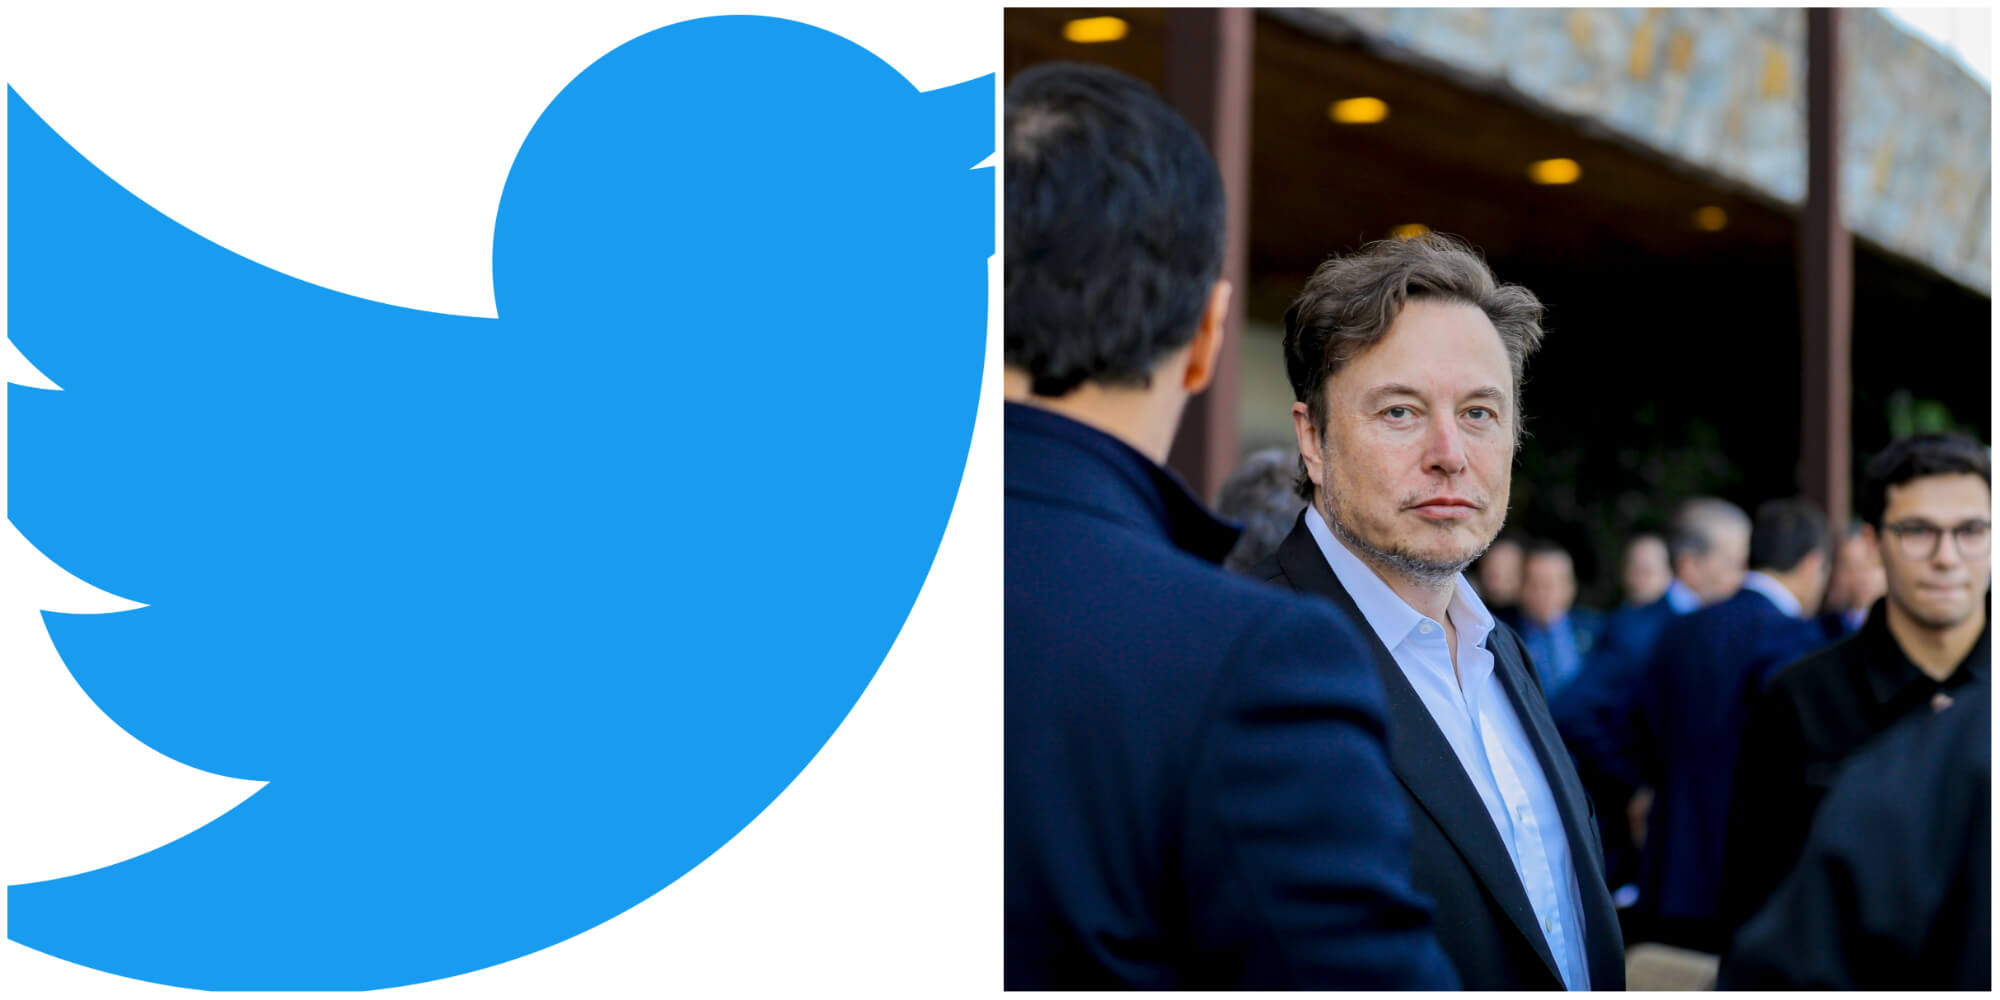 Twitter и Илон Маск предстанут перед судом по делу о выкупе за 44 миллиарда долларов, начиная с 17 октября.